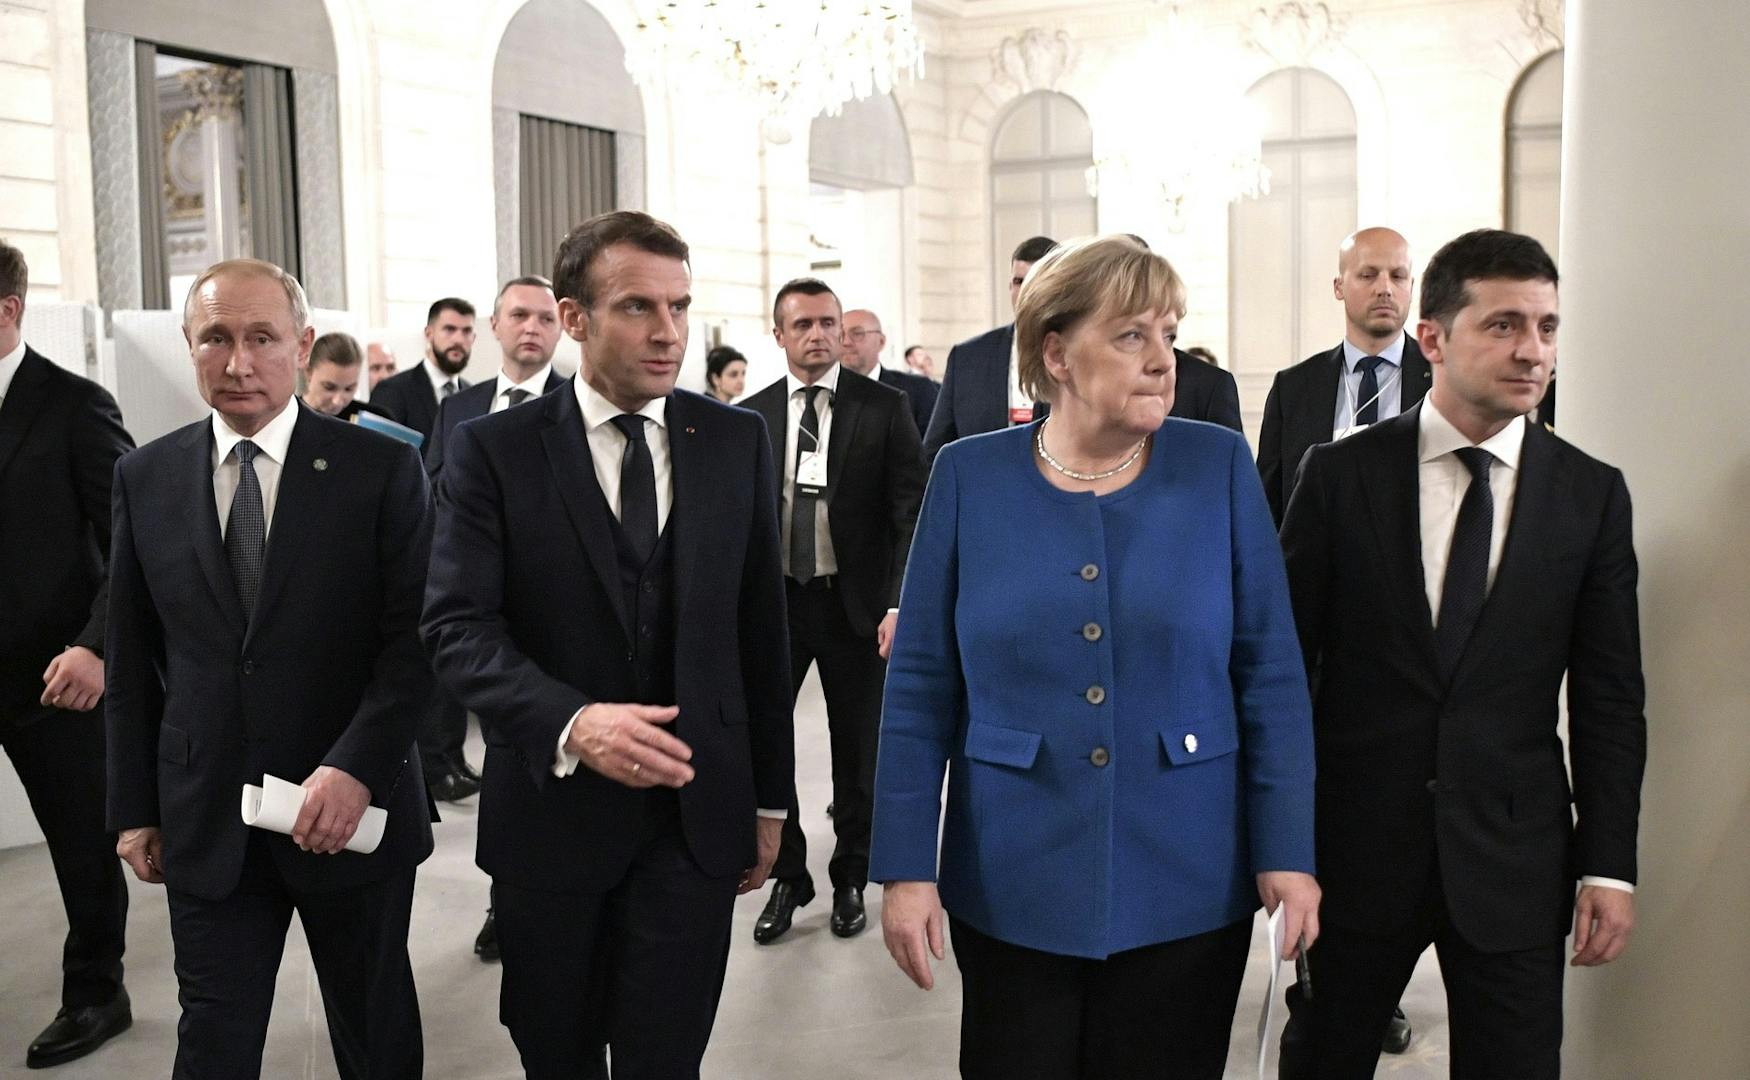 WORLD LEADERS: (From left) President Vladimir Putin of Russia, President Emmanuel Macron of France, former chancellor of Germany Angela Merkel, President Volodymyr Zelensky of Ukraine pictured on Dec. 10, 2019.